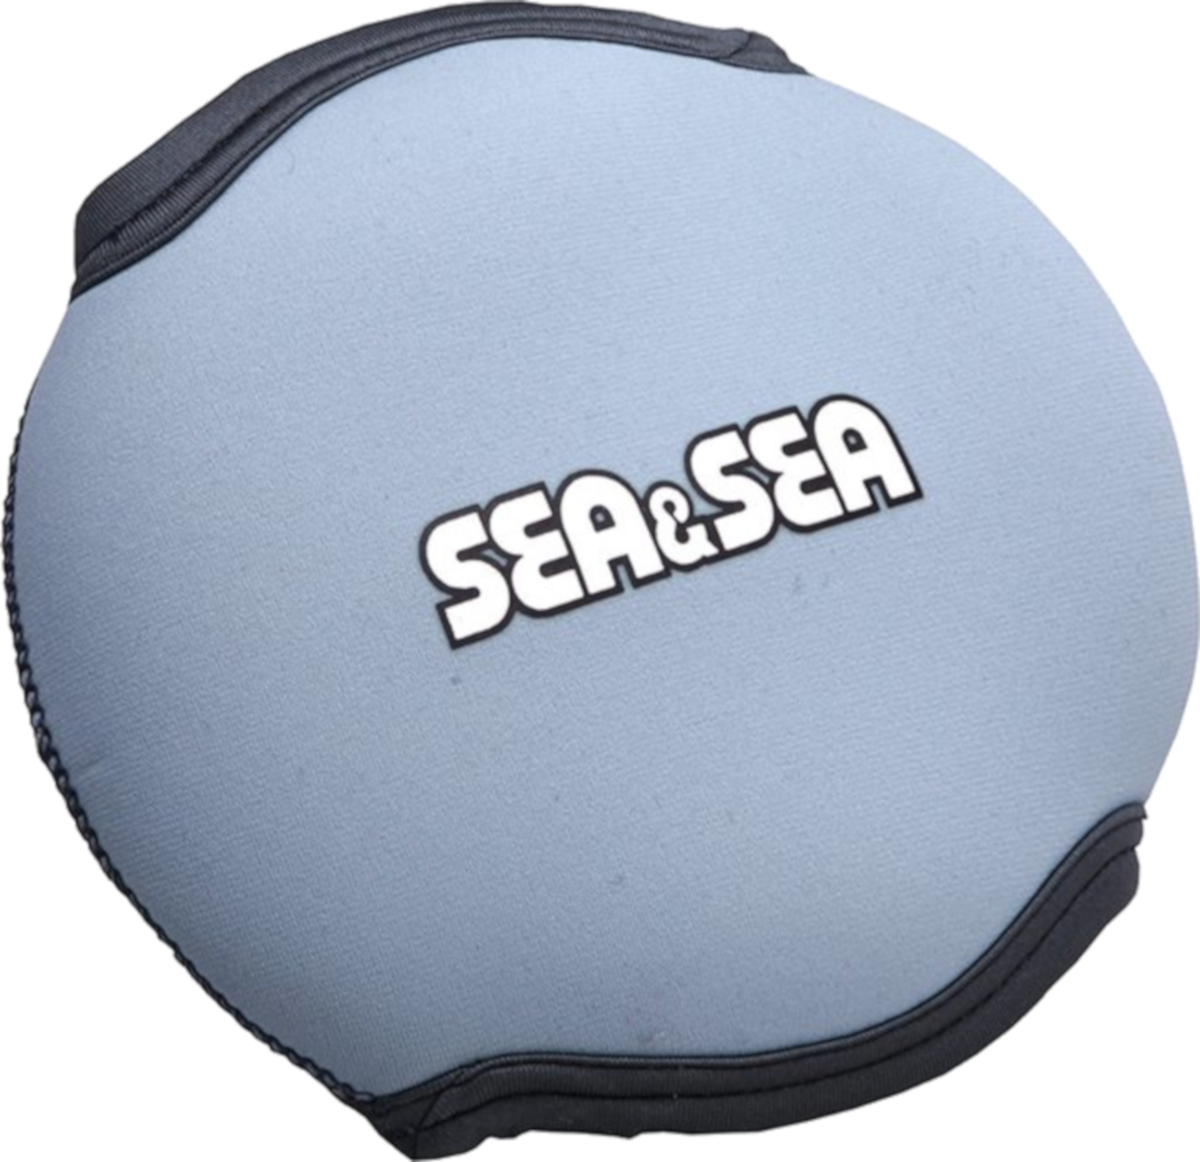 Sea &amp; Sea Dome Cover for Compact Dome Port